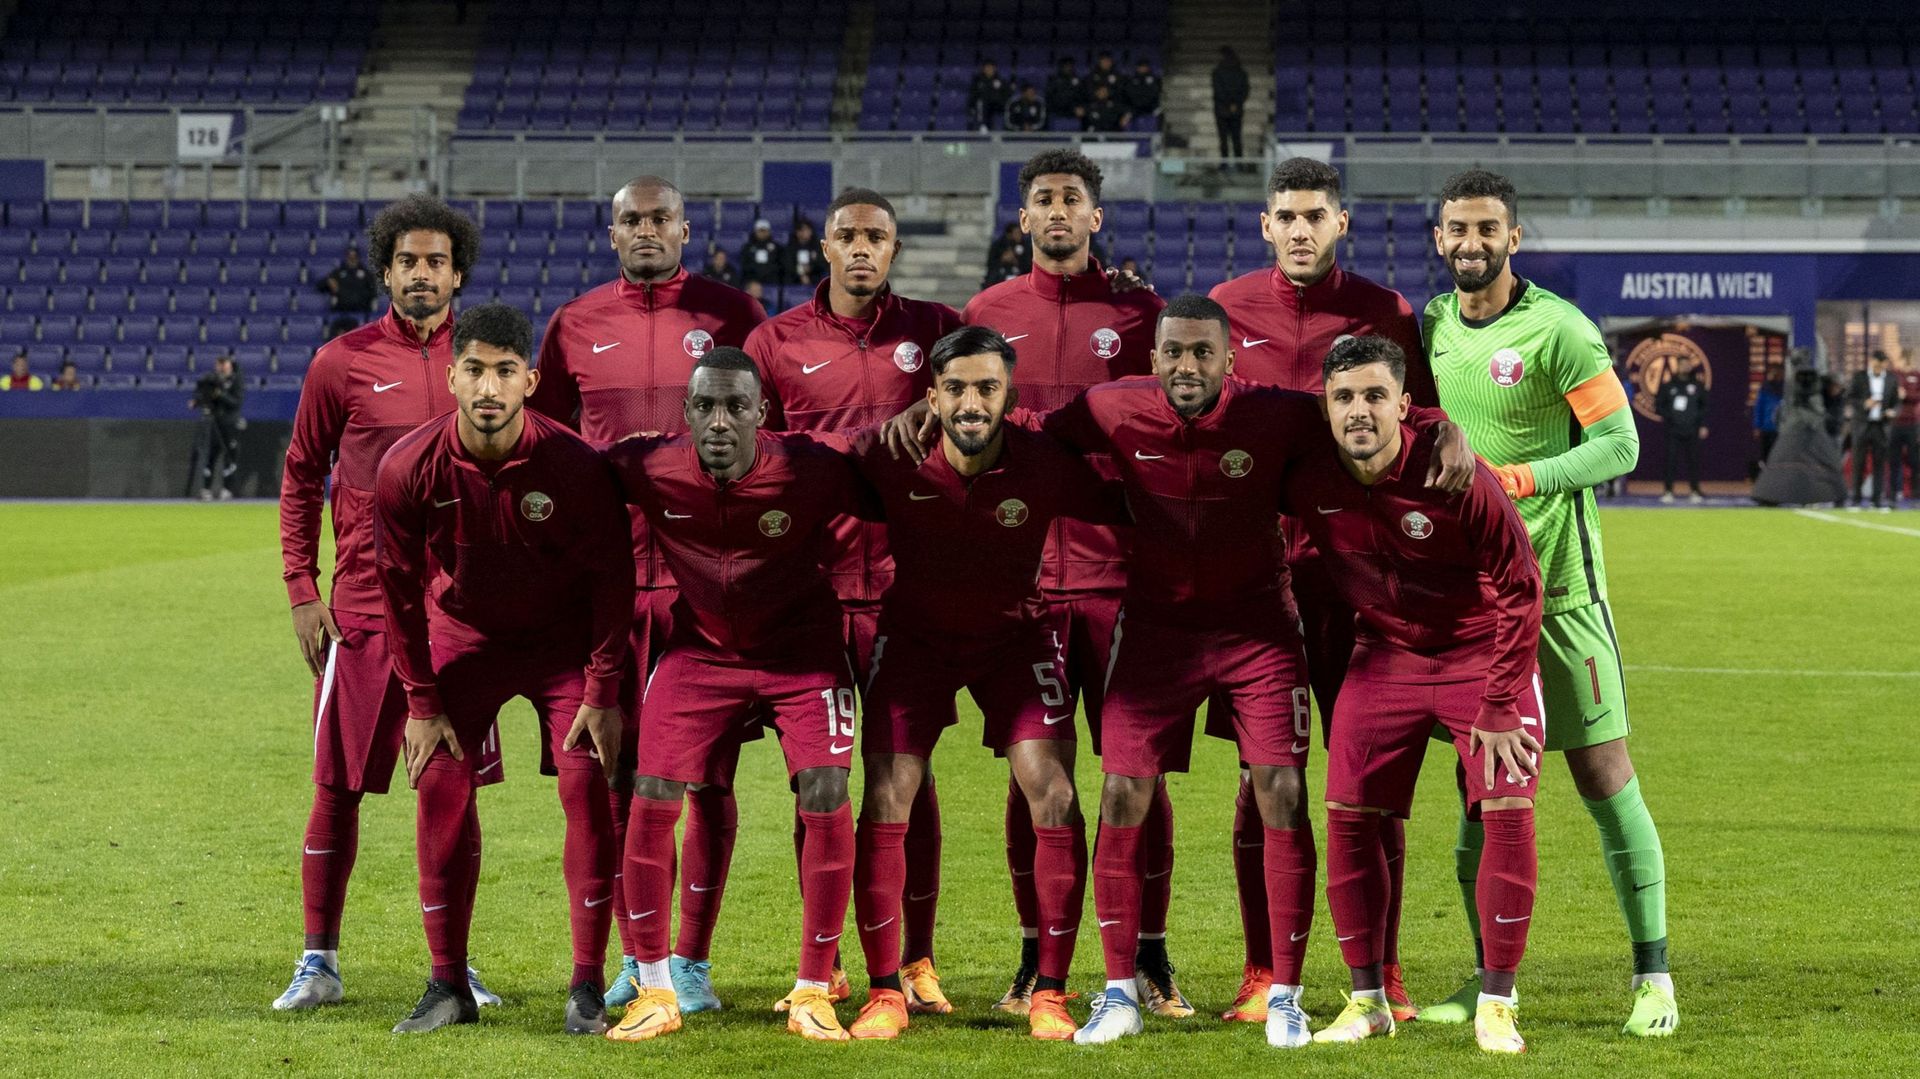 La KAS Eupen va défier le Qatar, pays hôte du prochain Mondial de football, lors d’une rencontre de préparation prévue lundi 17 octobre prochain à Marbella (18h30), en Espagne.